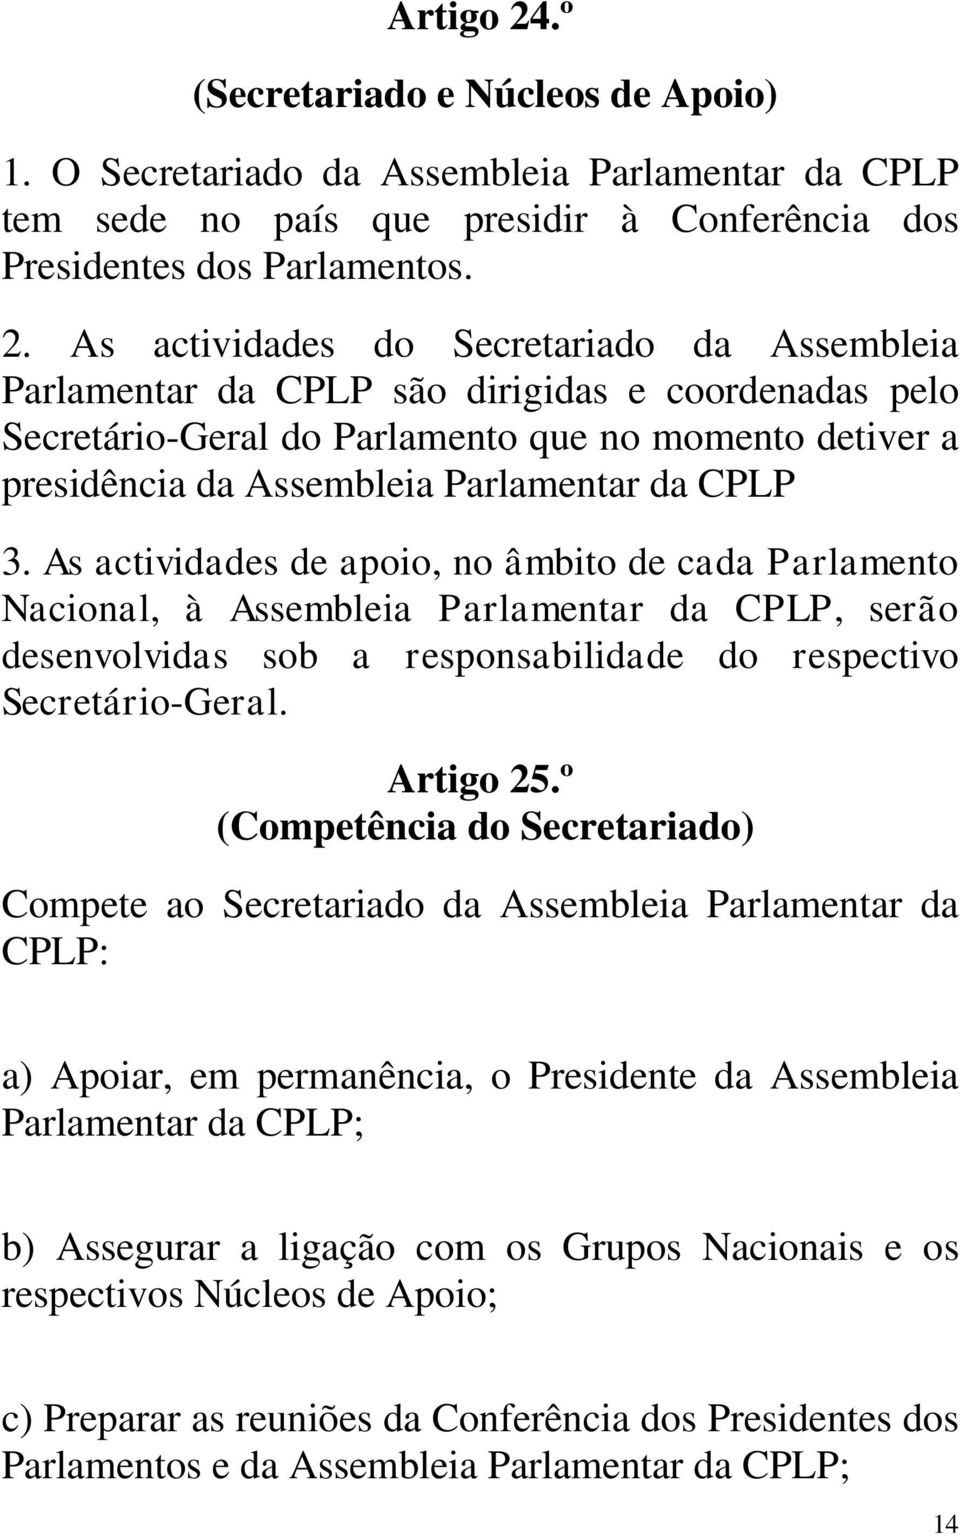 As actividades do Secretariado da Assembleia Parlamentar da CPLP são dirigidas e coordenadas pelo Secretário-Geral do Parlamento que no momento detiver a presidência da Assembleia Parlamentar da CPLP